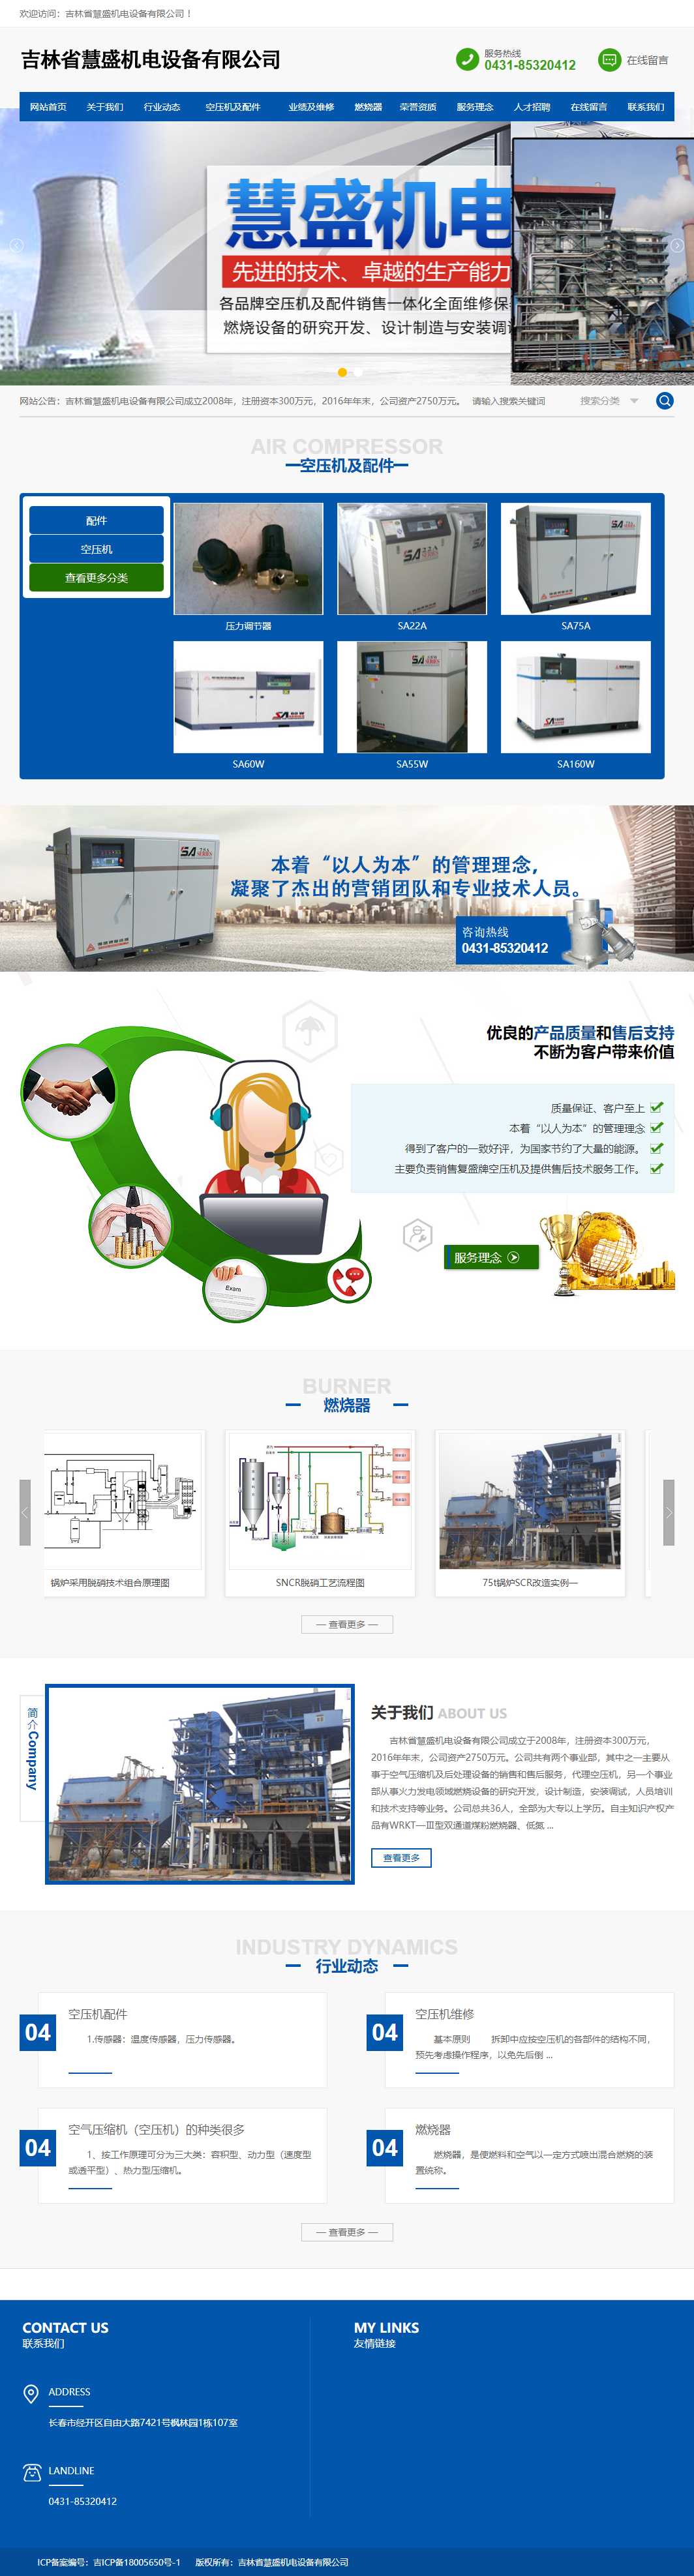 吉林省慧盛机电设备有限公司网站案例